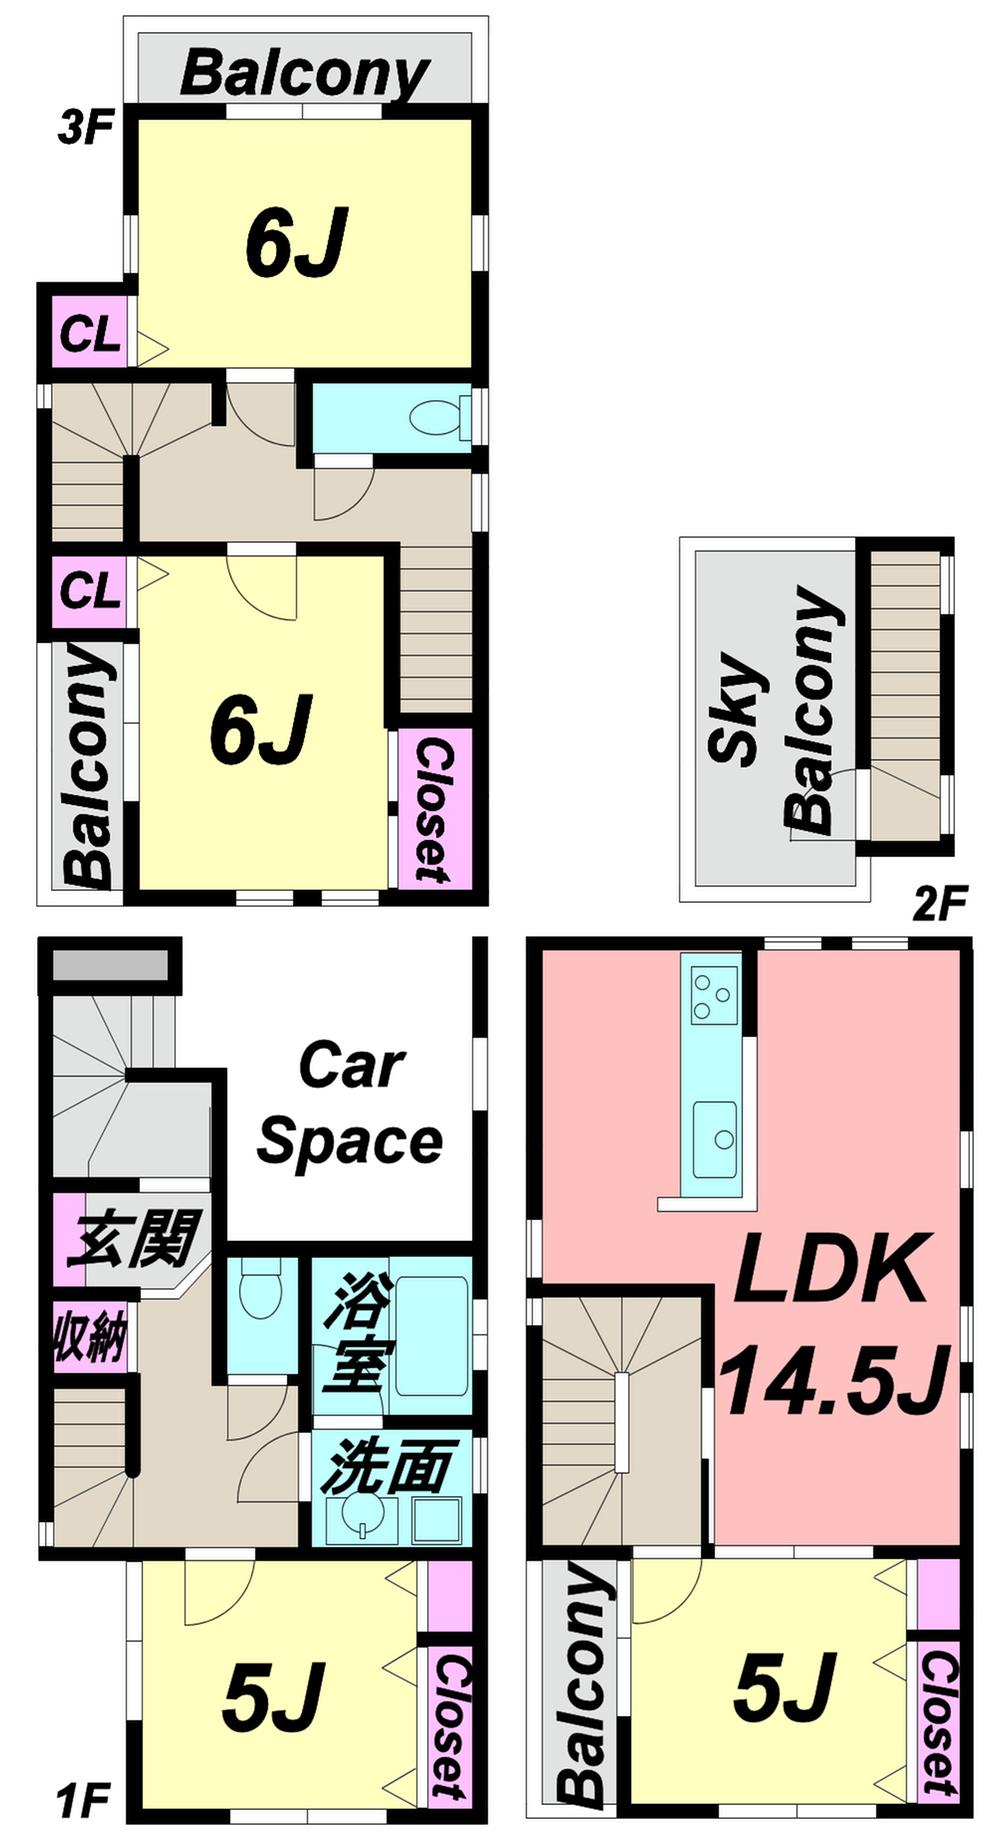 Floor plan. 31,800,000 yen, 3LDK + S (storeroom), Land area 67.73 sq m , Building area 113.85 sq m